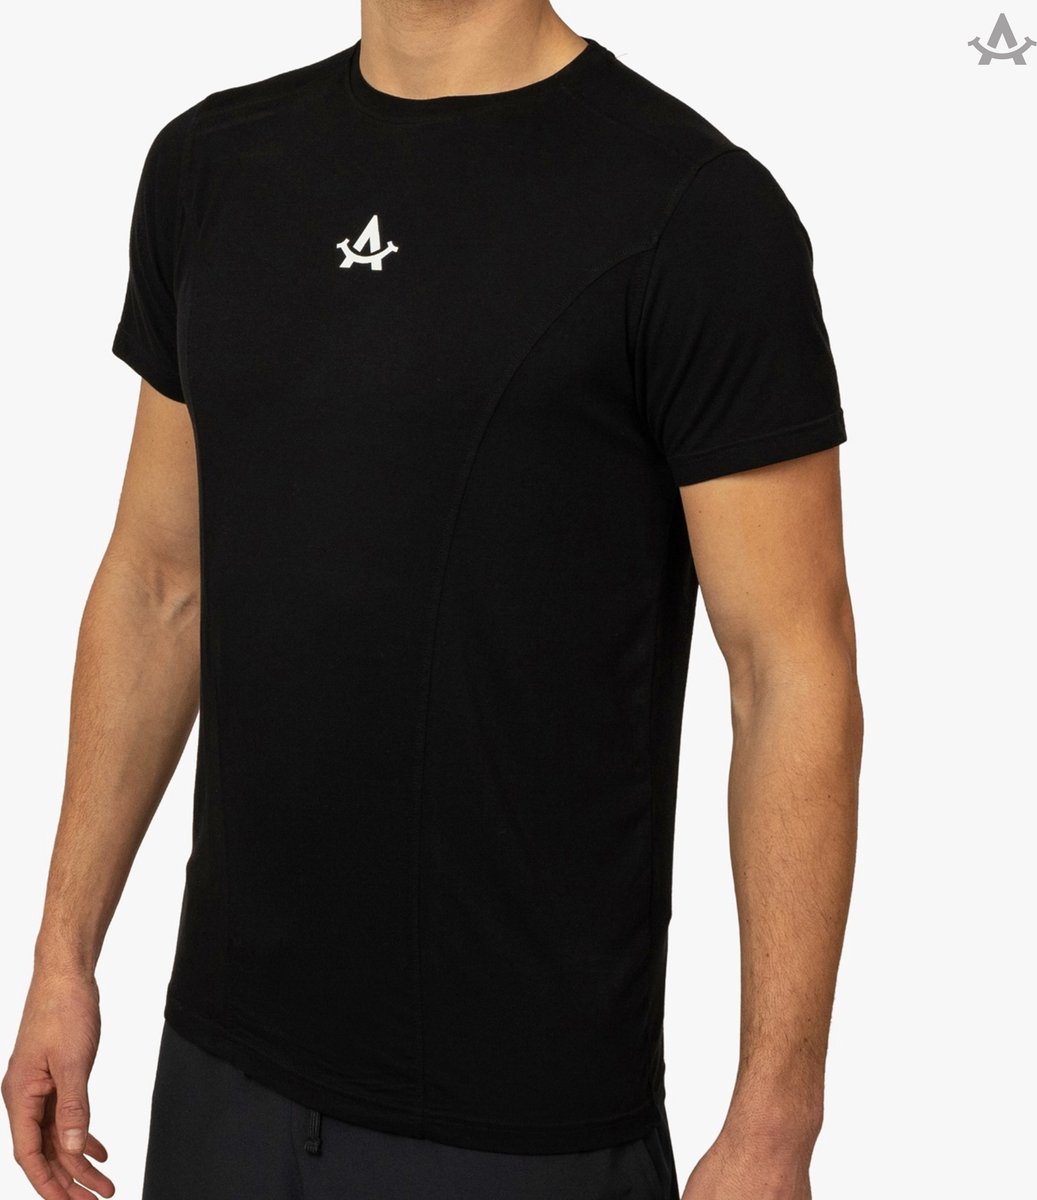 Sportshirt - 100% Duurzaam - Zwart - Handgemaakt in Portugal - Heren - Extra Lang - Fitness shirt mannen - Padel - Hardlopen - APM - S